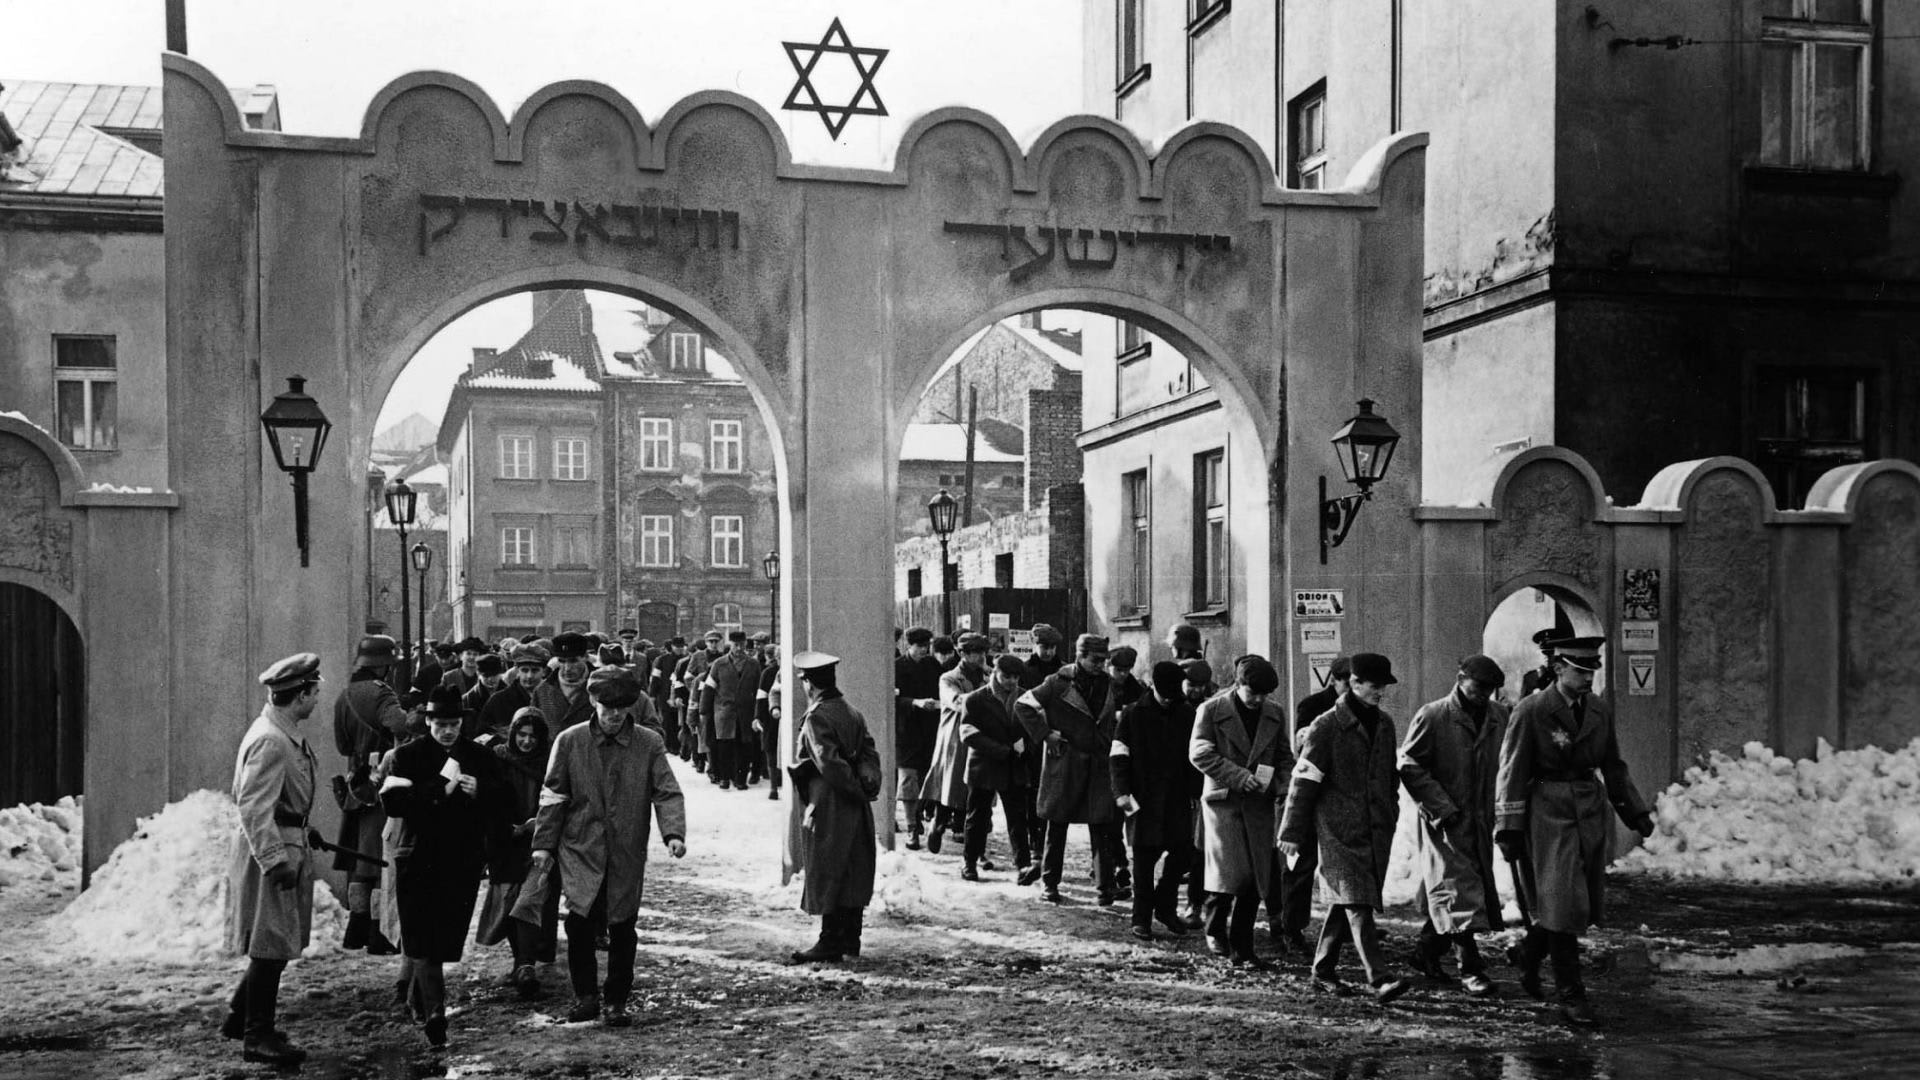 Fotka z filmu Schindlerův seznam, který vypráví o koncentračních táborech